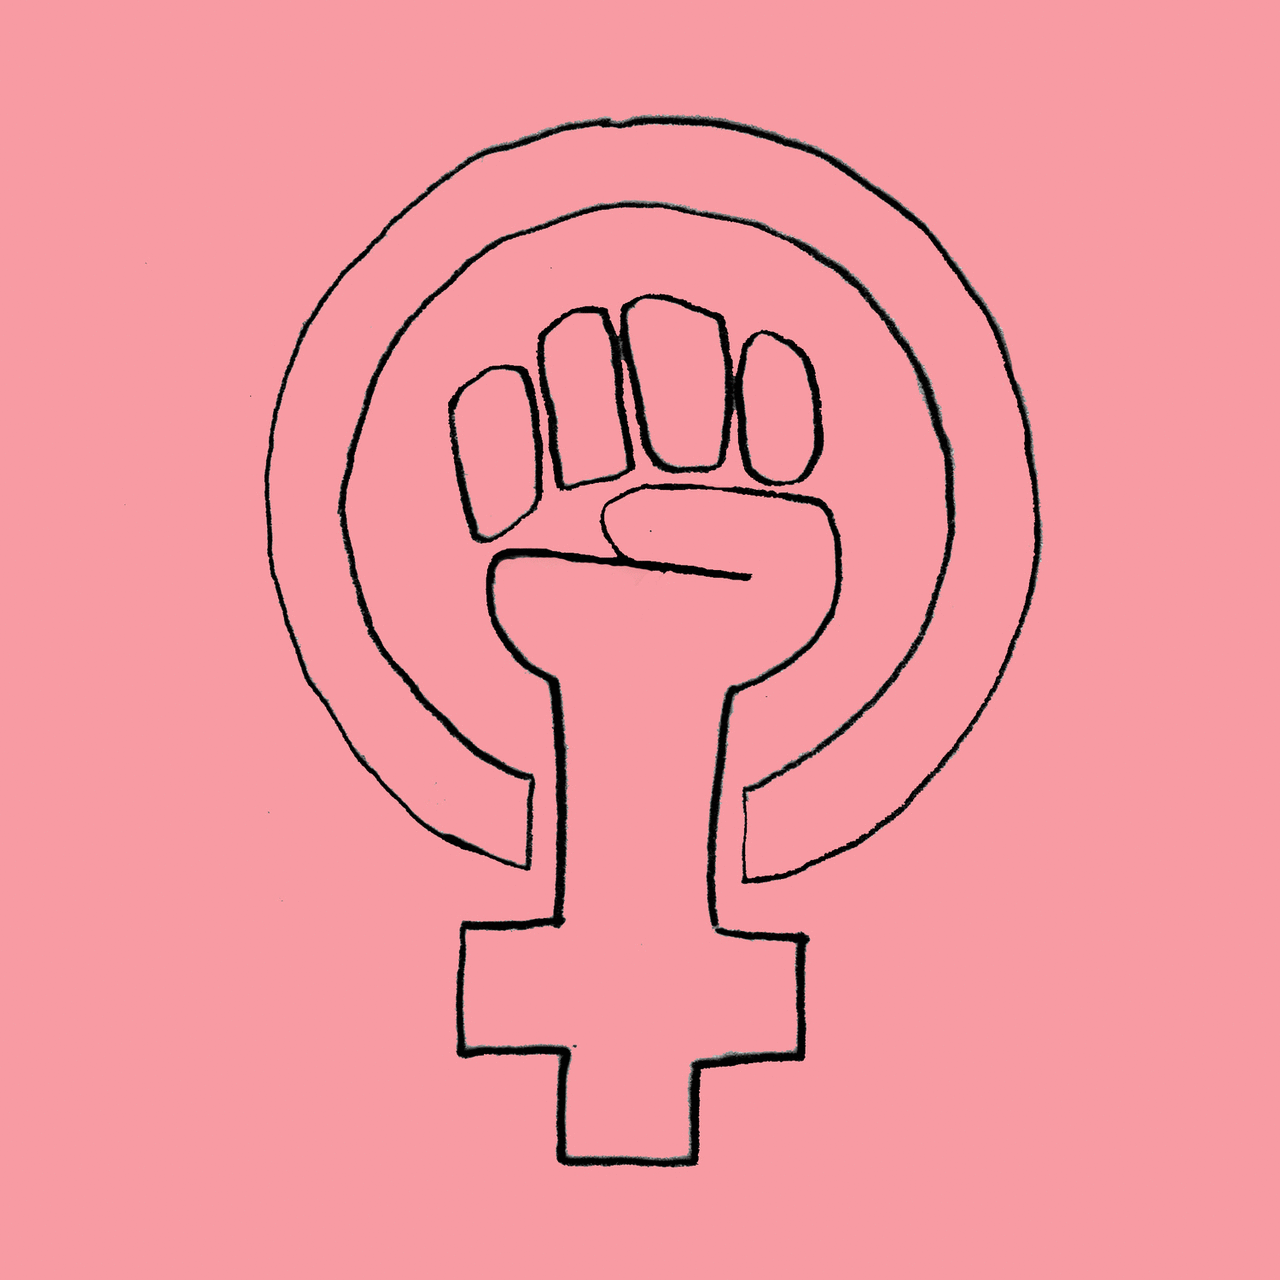 Спрей феминизм бравл. Феминизм. Значок феминизма. Флаг феминисток. Герб феминисток.